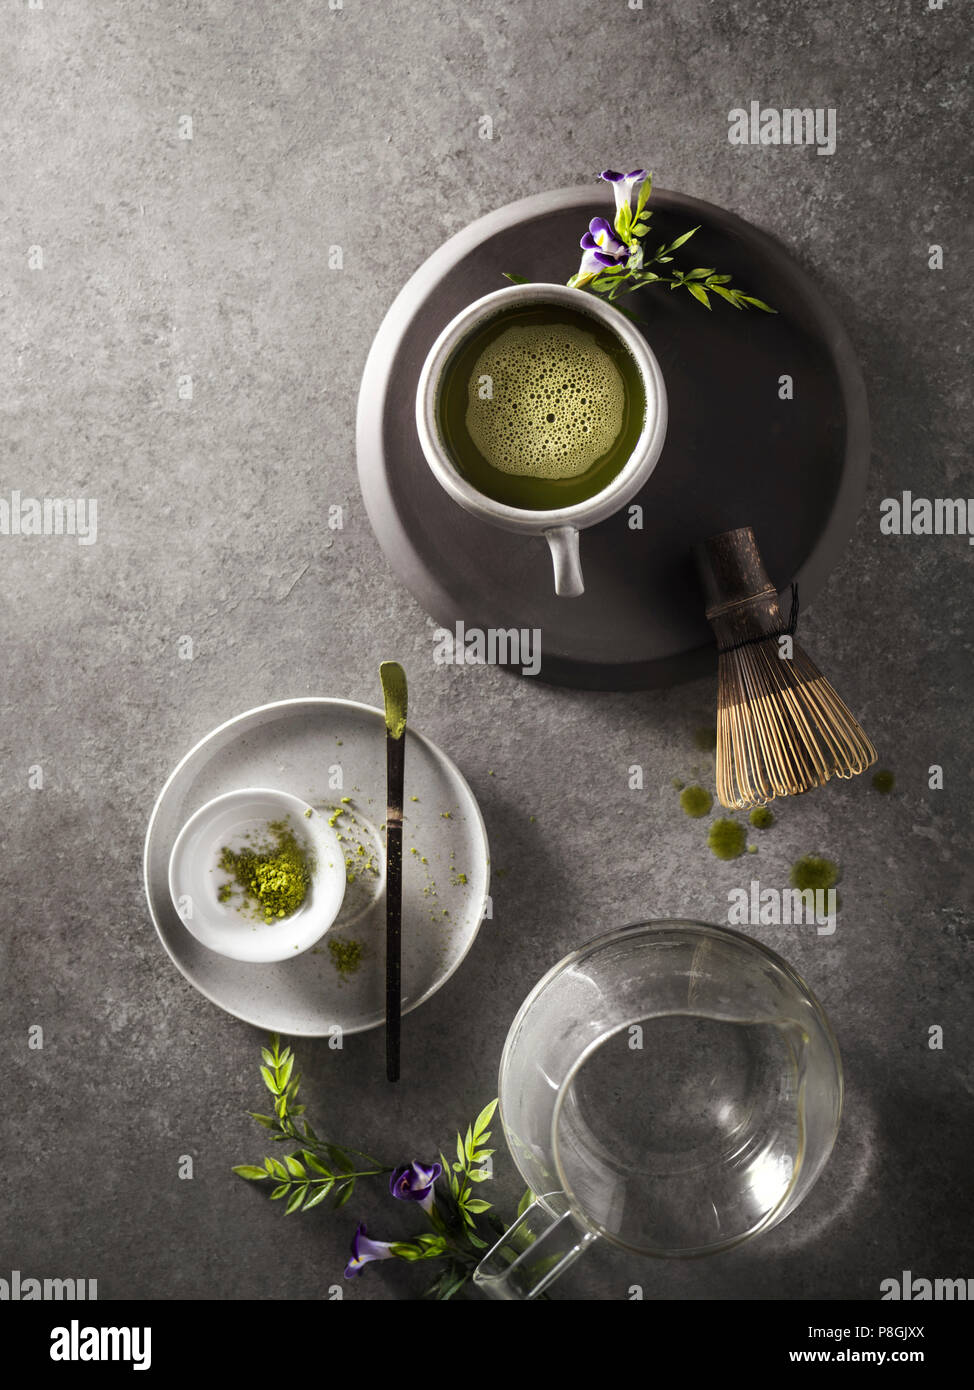 Une bonne tasse de thé vert matcha qui vient d'être préparé avec un fouet en bois et verre à l'arrière-plan. Banque D'Images